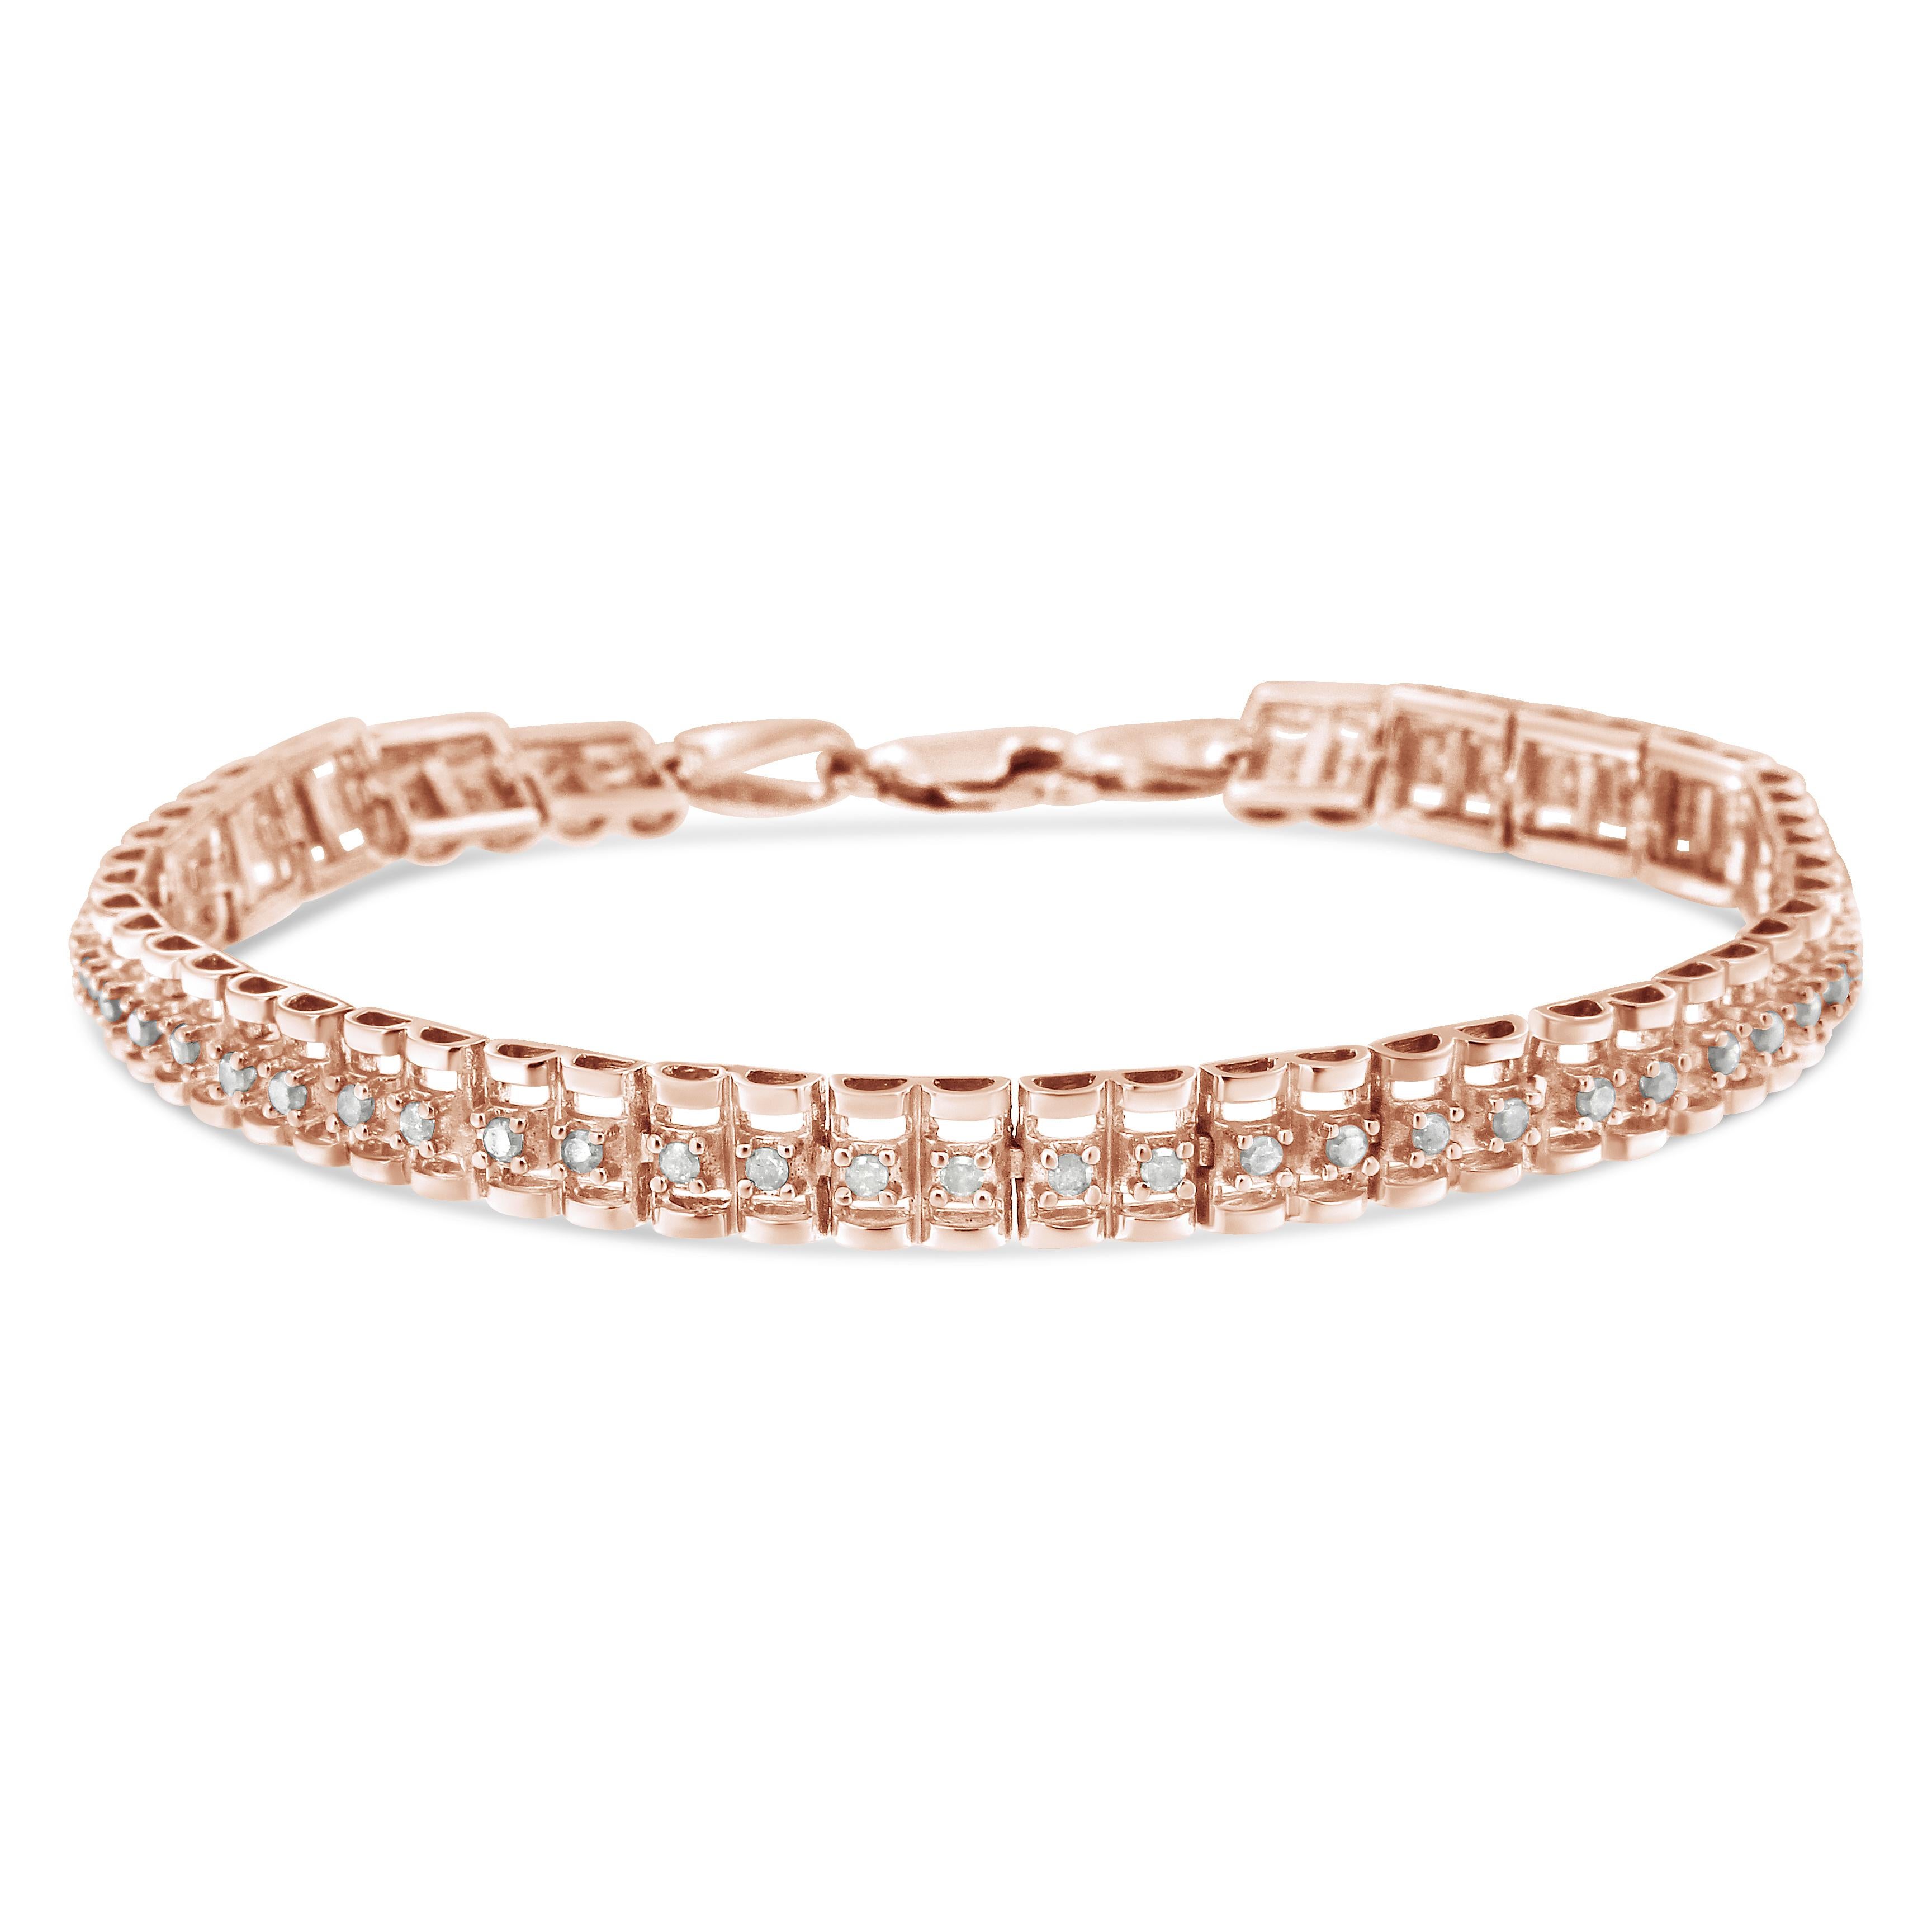 Ce magnifique bracelet de tennis en argent 925 présente un poids total de 0,50 carat avec 26 diamants ronds de taille rose. Le bracelet de tennis est composé de maillons articulés avec deux formes entourant deux diamants de chaque côté. Les diamants